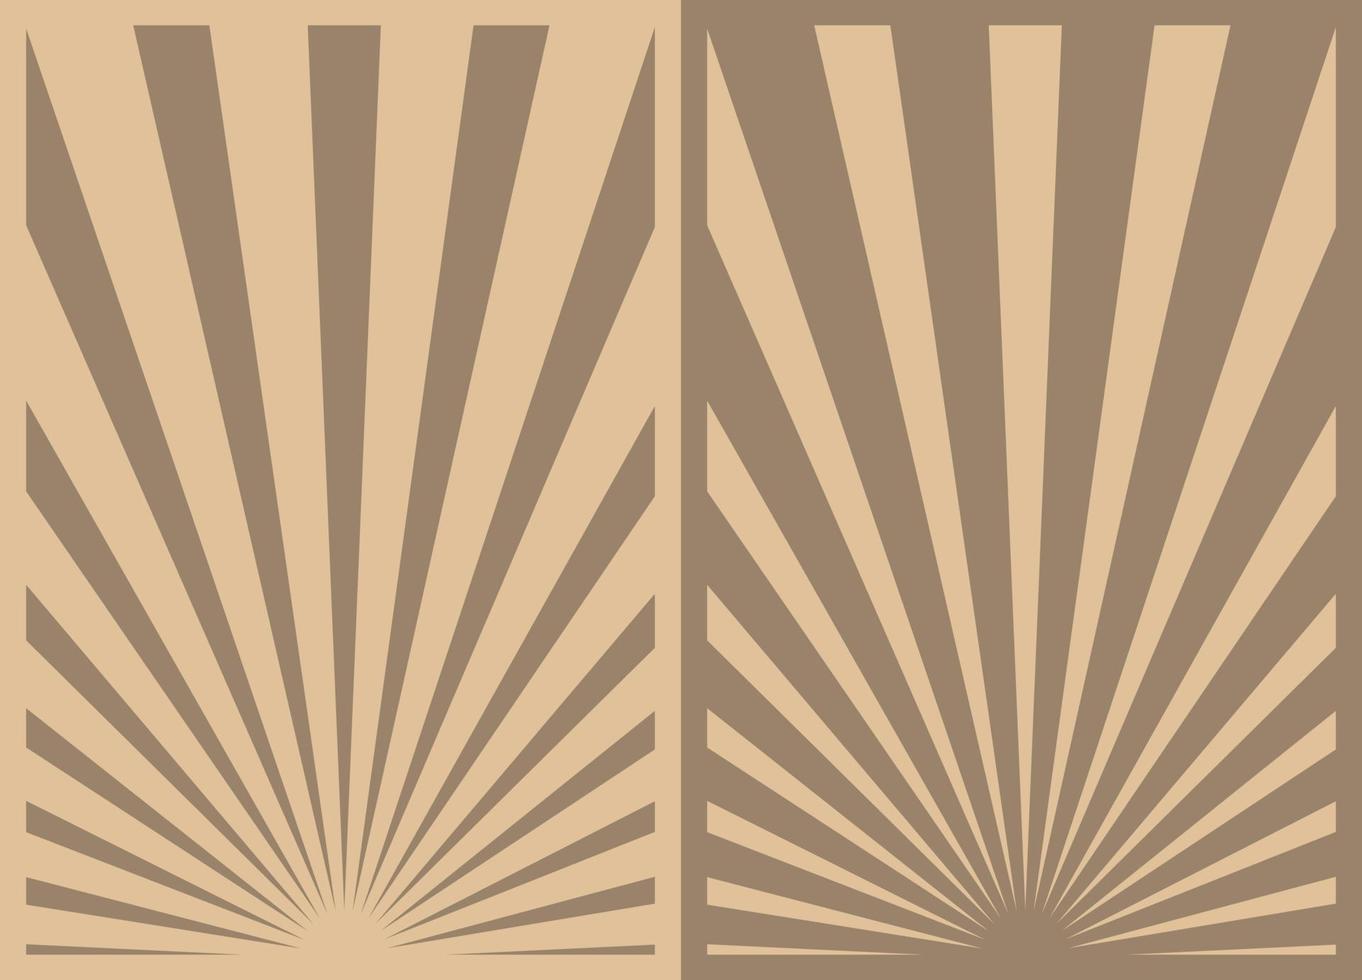 conjunto de cartazes vintage marrom sunburst listras, modelo com raios centrados na parte inferior. cartazes verticais de desenhos animados sépia inspirados retrô. vetor